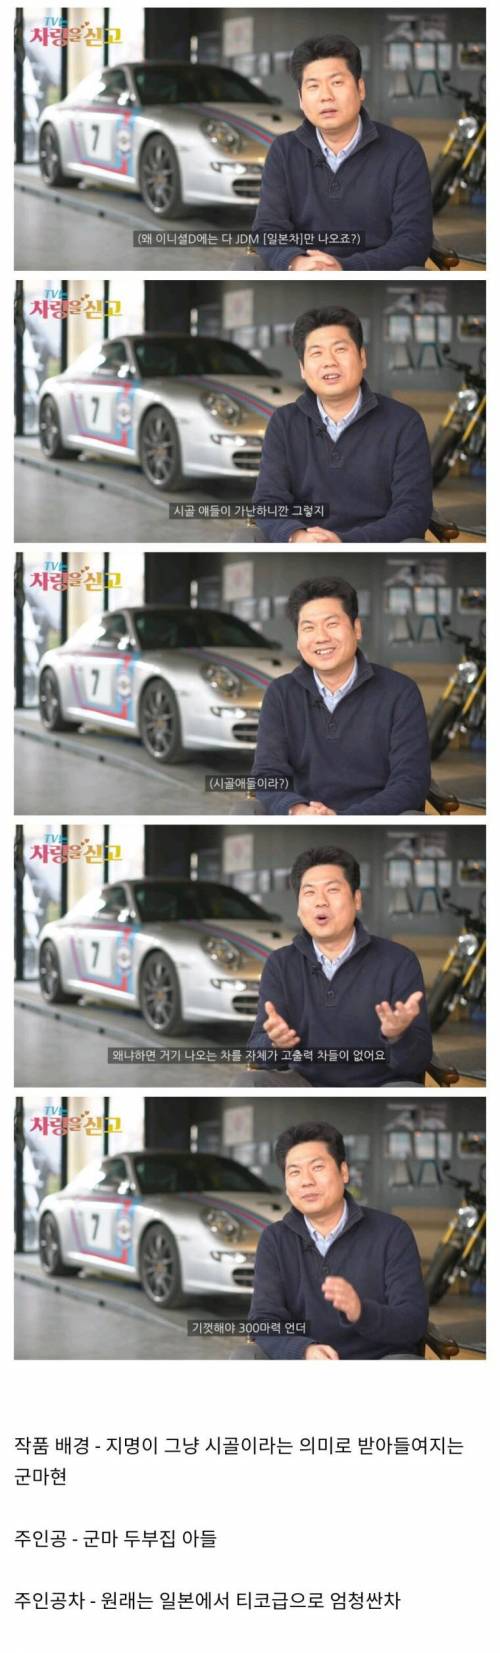 5 이니셜D에 애매한 스펙의 차들만 나온 이유.jpg